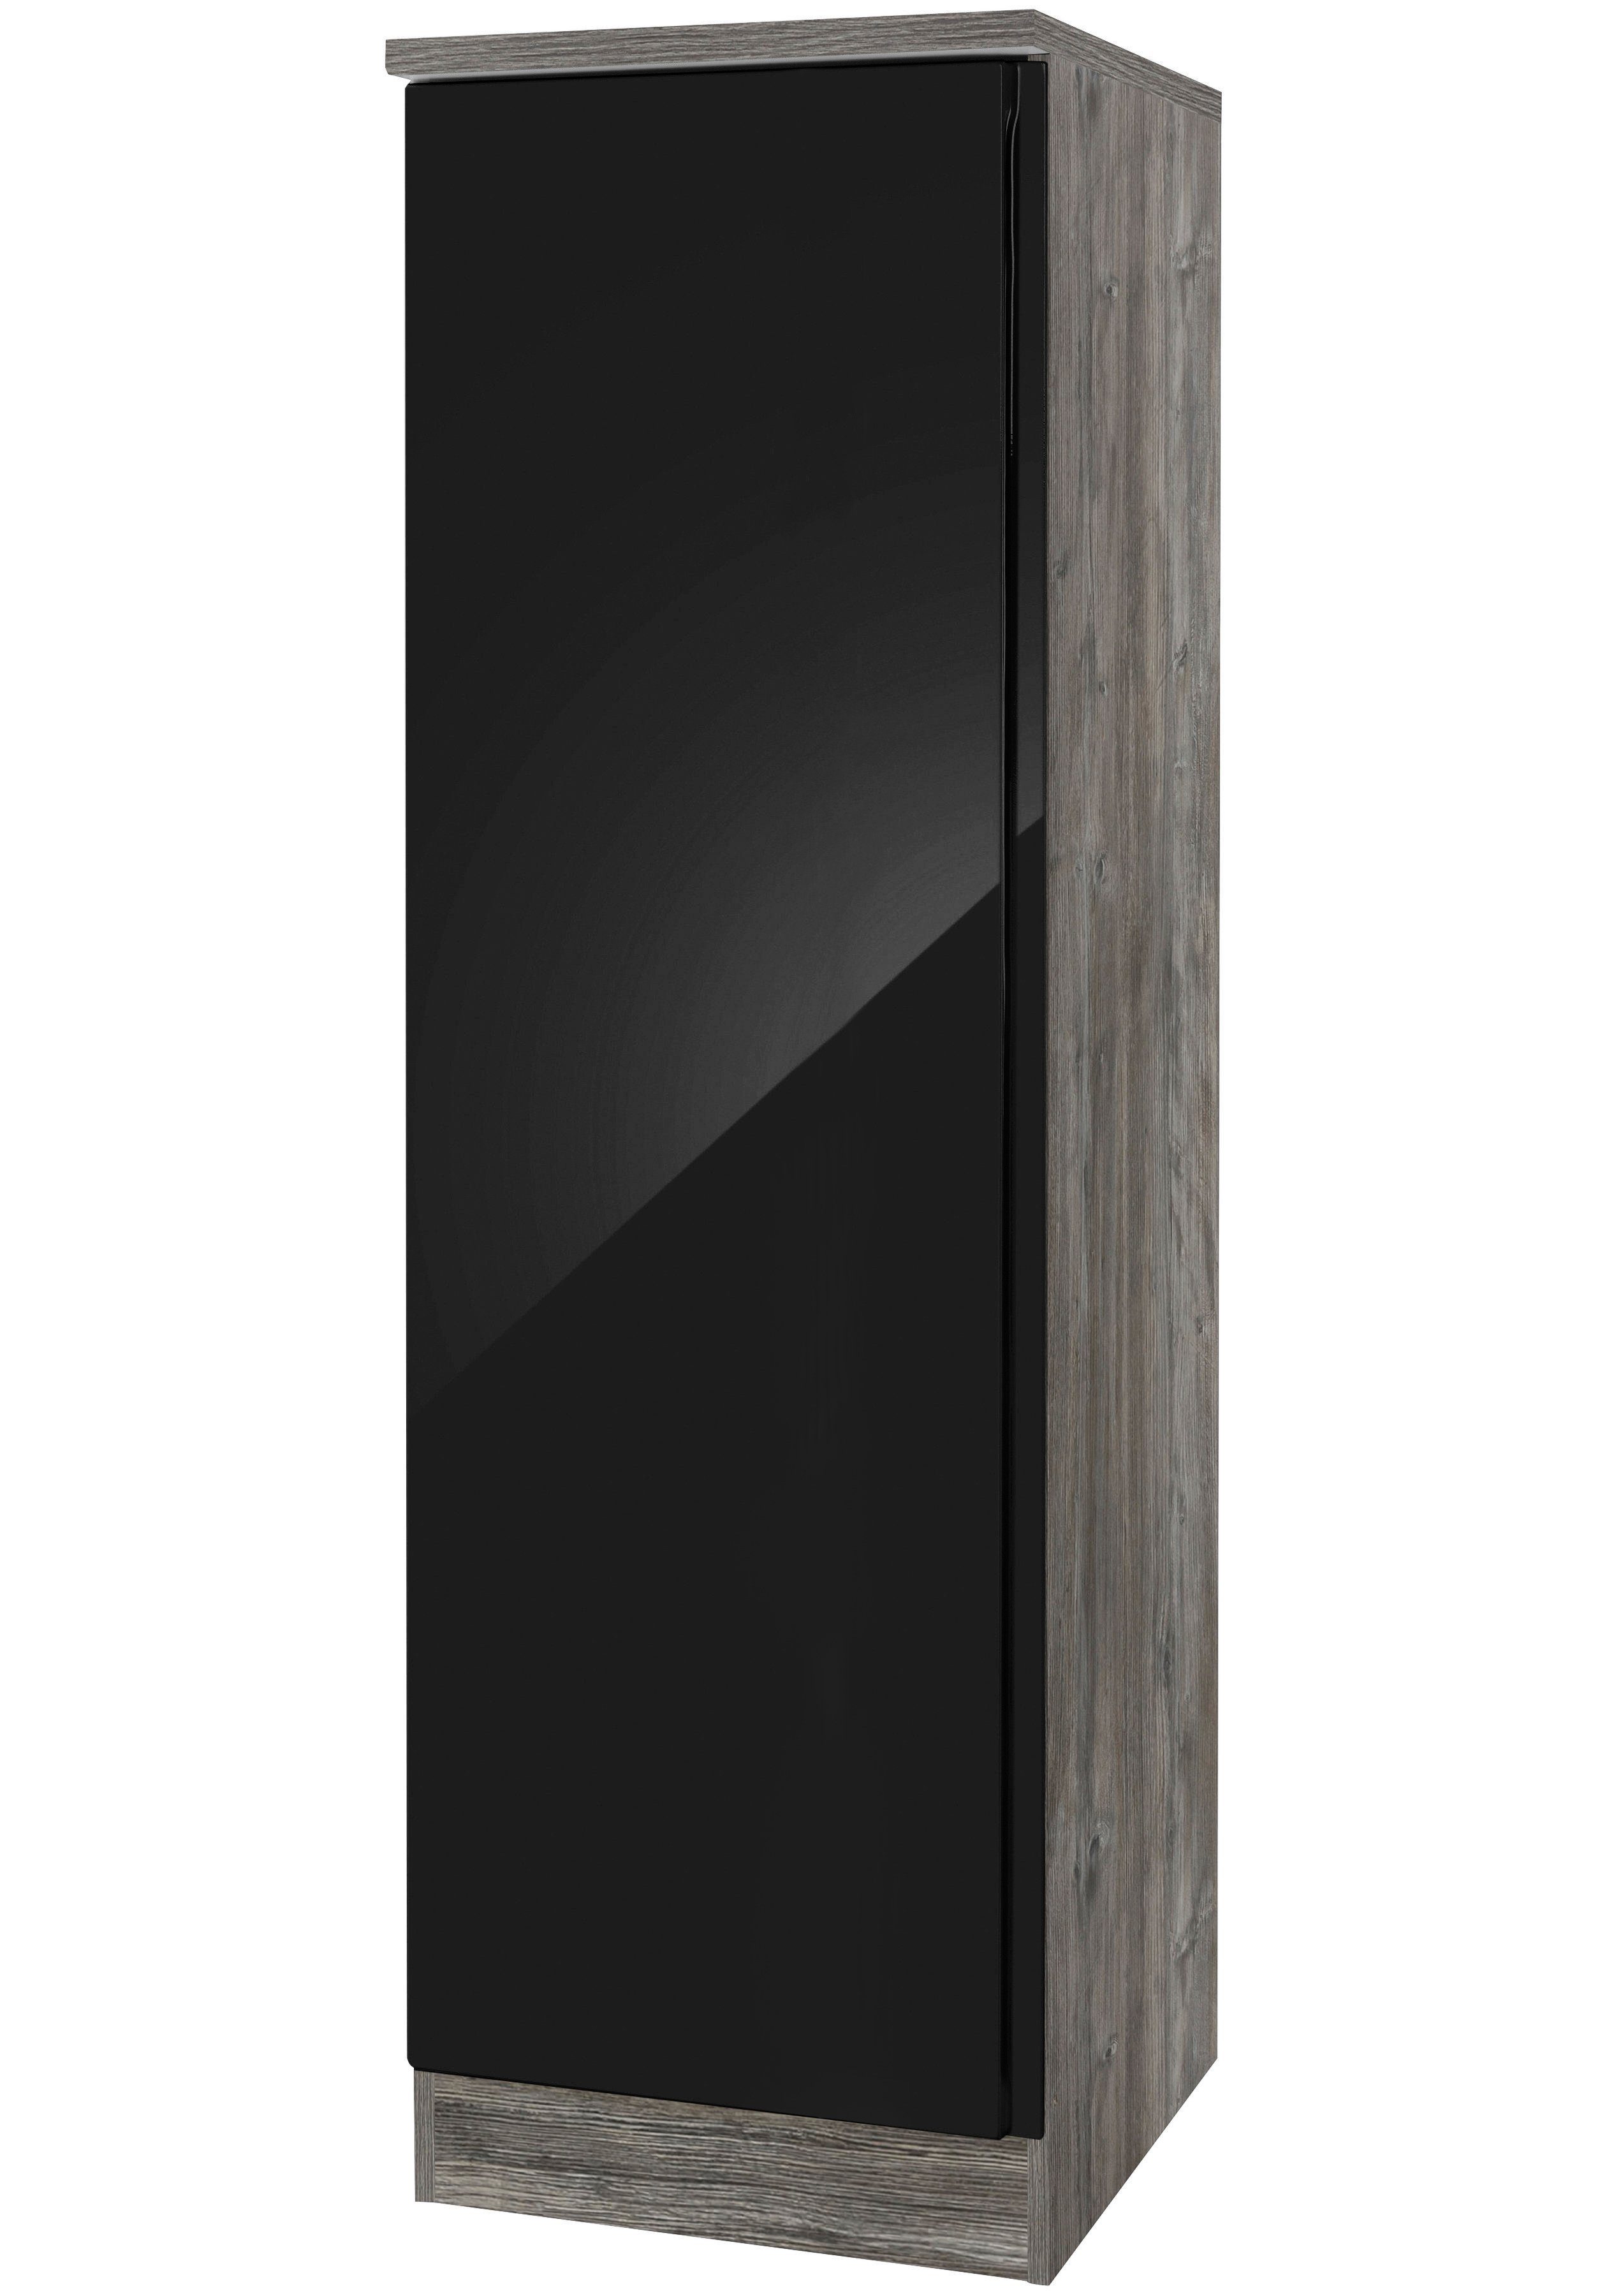 HELD MÖBEL Seitenschrank Virginia 50 cm breit, für viel Stauraum schwarz Hochglanz | eichevintage